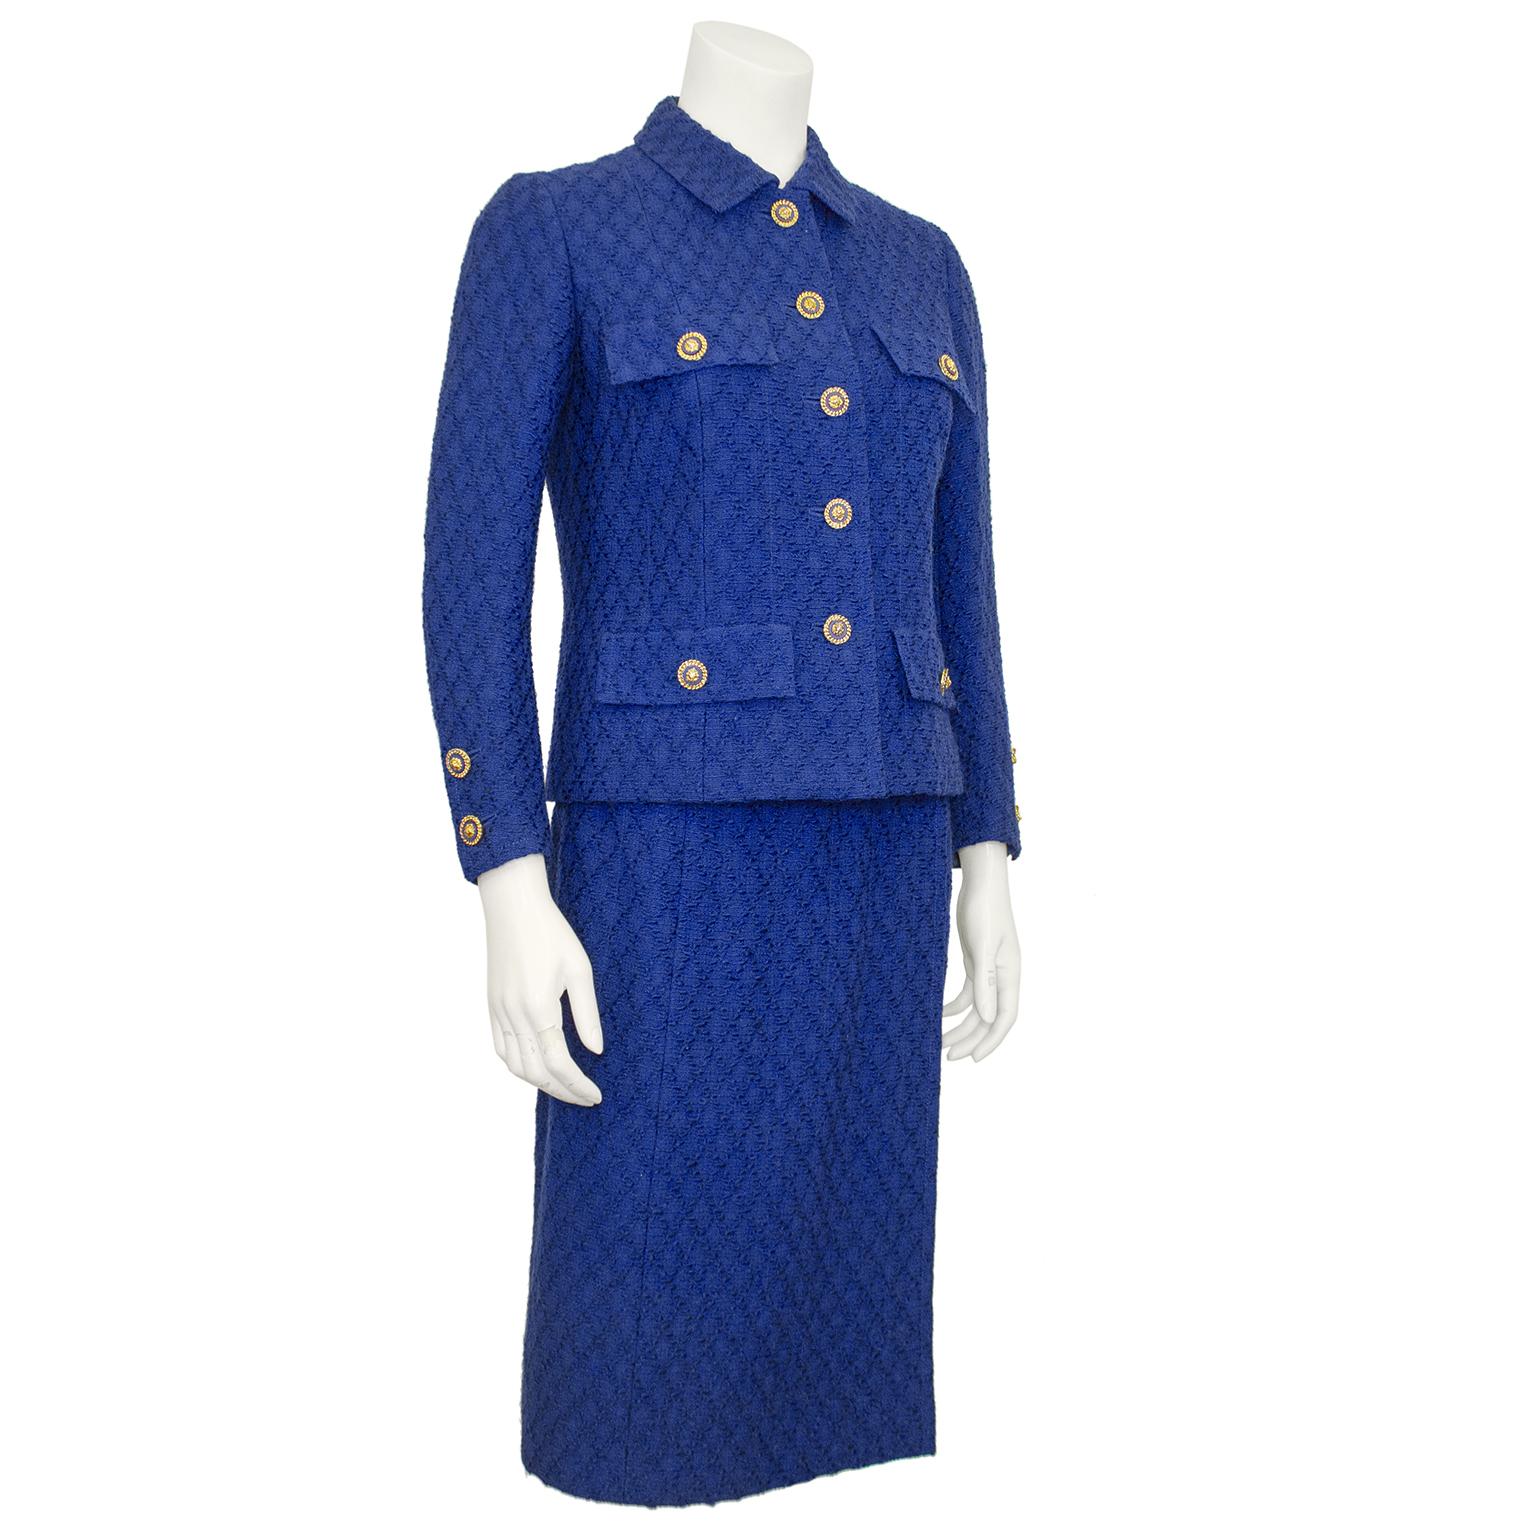 Tailleur jupe Chanel Haute Couture classique des années 1980, en laine bouclée bleu roi à motifs de losanges. La veste est entièrement doublée et s'achève à l'ourlet par la chaîne dorée emblématique. Cinq boutons à tête de lion en métal bleu roi et